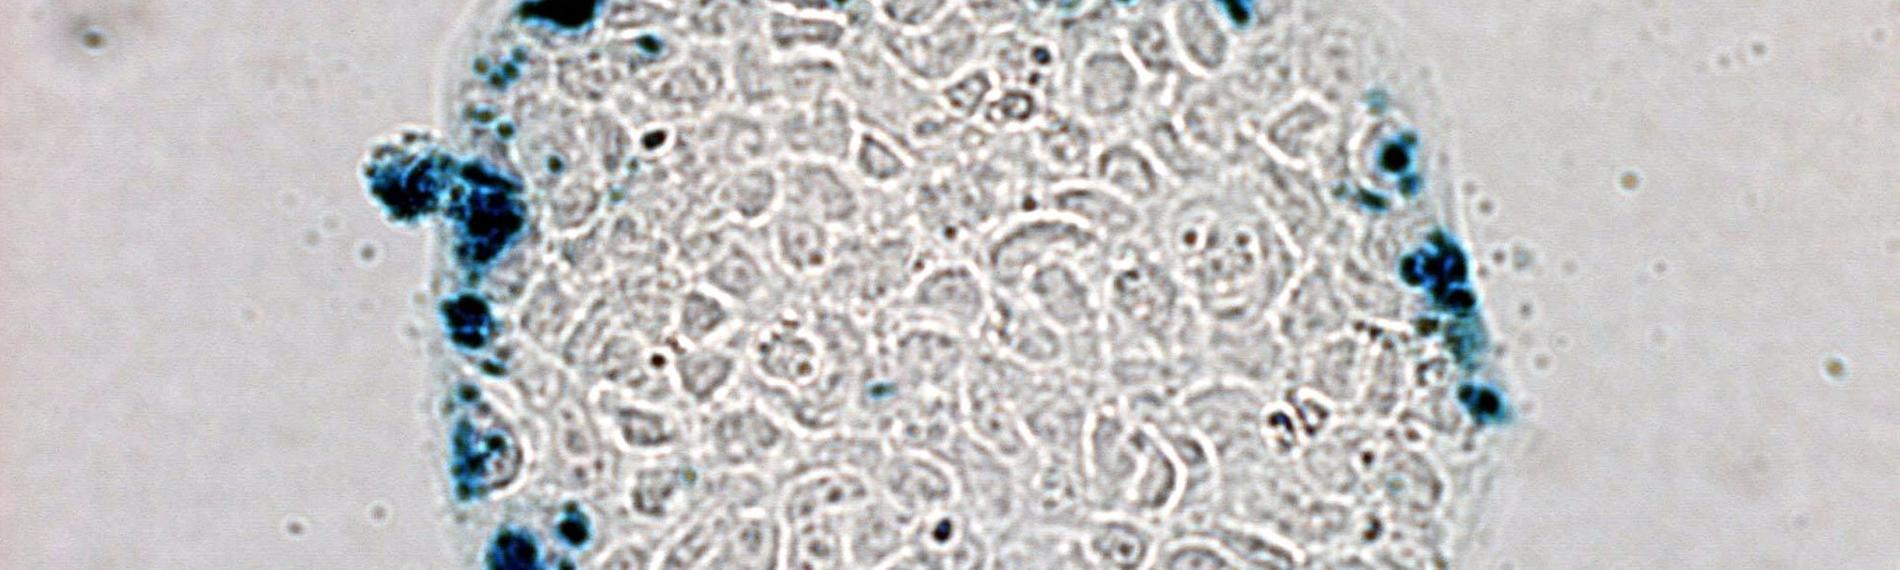 Mikroskopische Ansicht von Darmkrebszellen, denen von Wissenschaftlern genetisch veränderte E. coli Bakterien injiziert wurden.